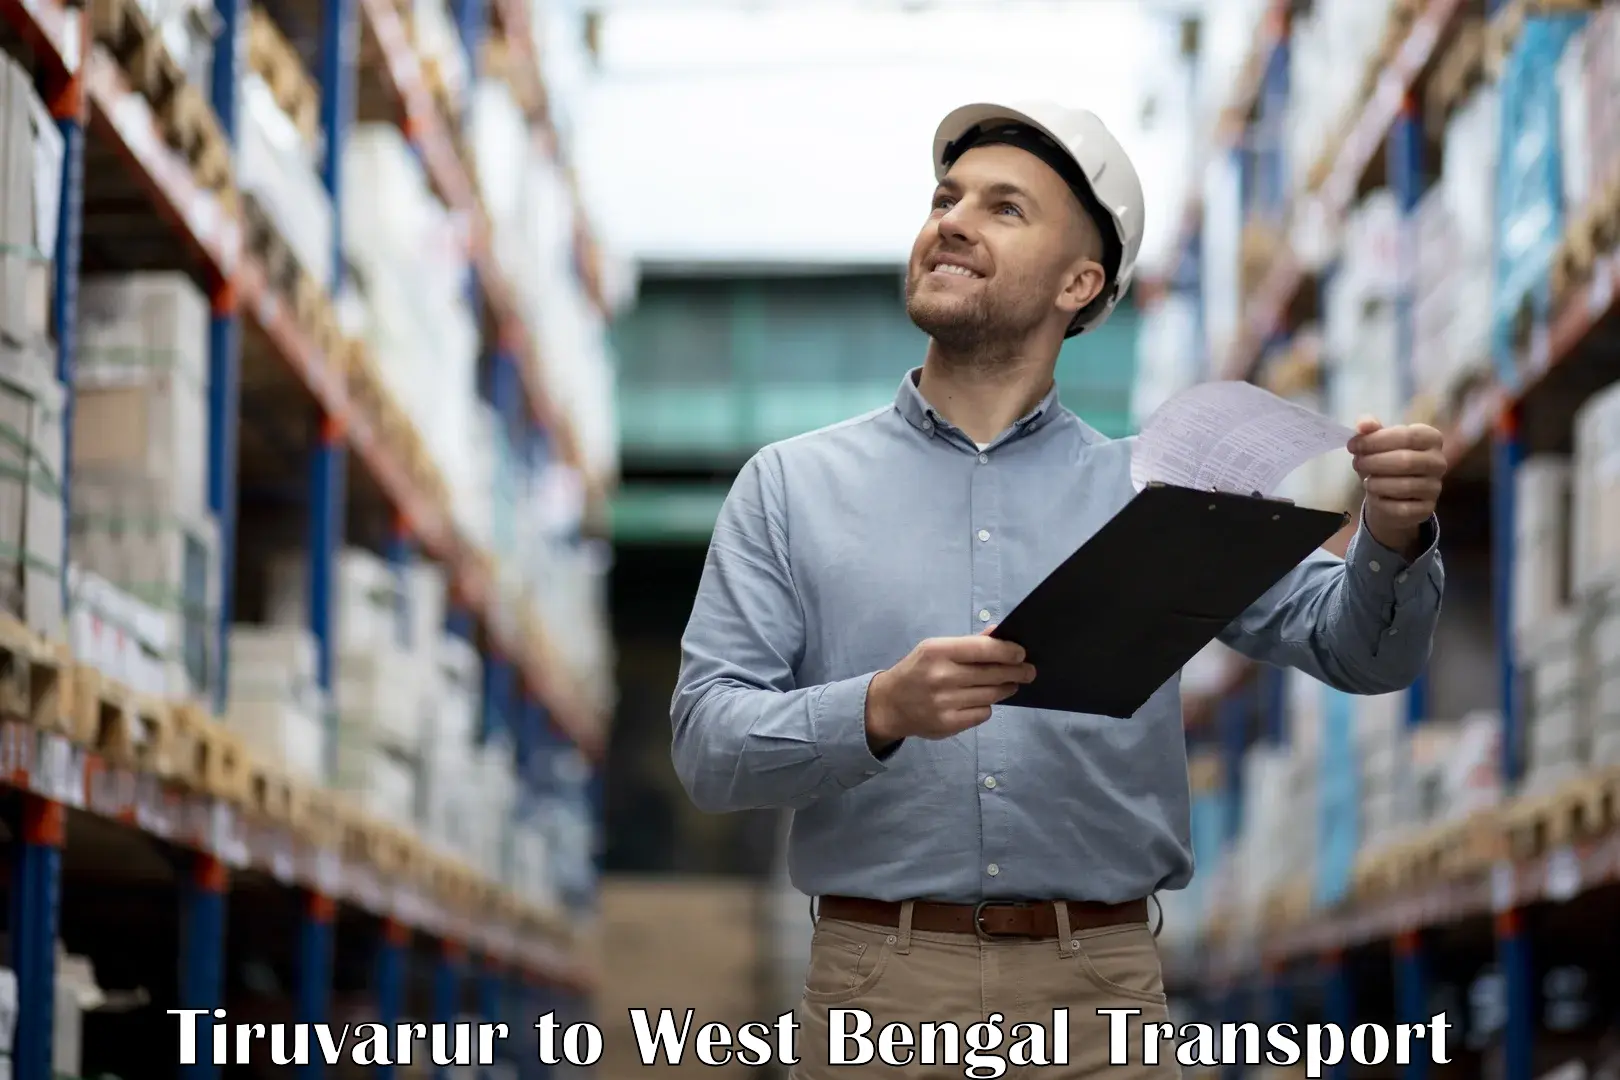 Commercial transport service Tiruvarur to Mohammad Bazar